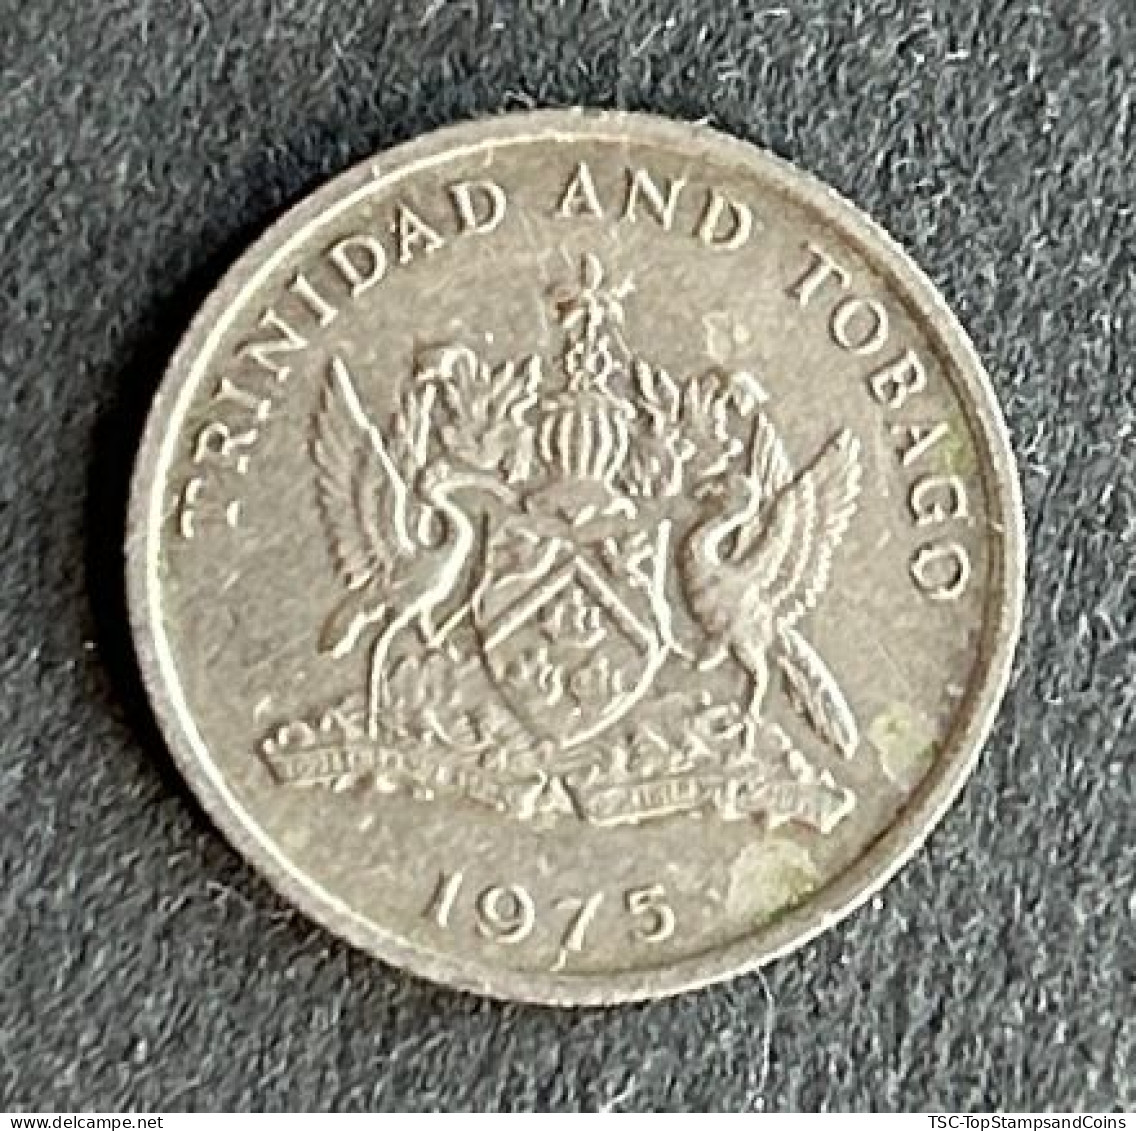 $$T&B500 - Elizabeth II Coat Of Arms / Flaming Hibiscus - 10 Cents Coin - Trinidad & Tobago - 1975 - Trinidad Y Tobago